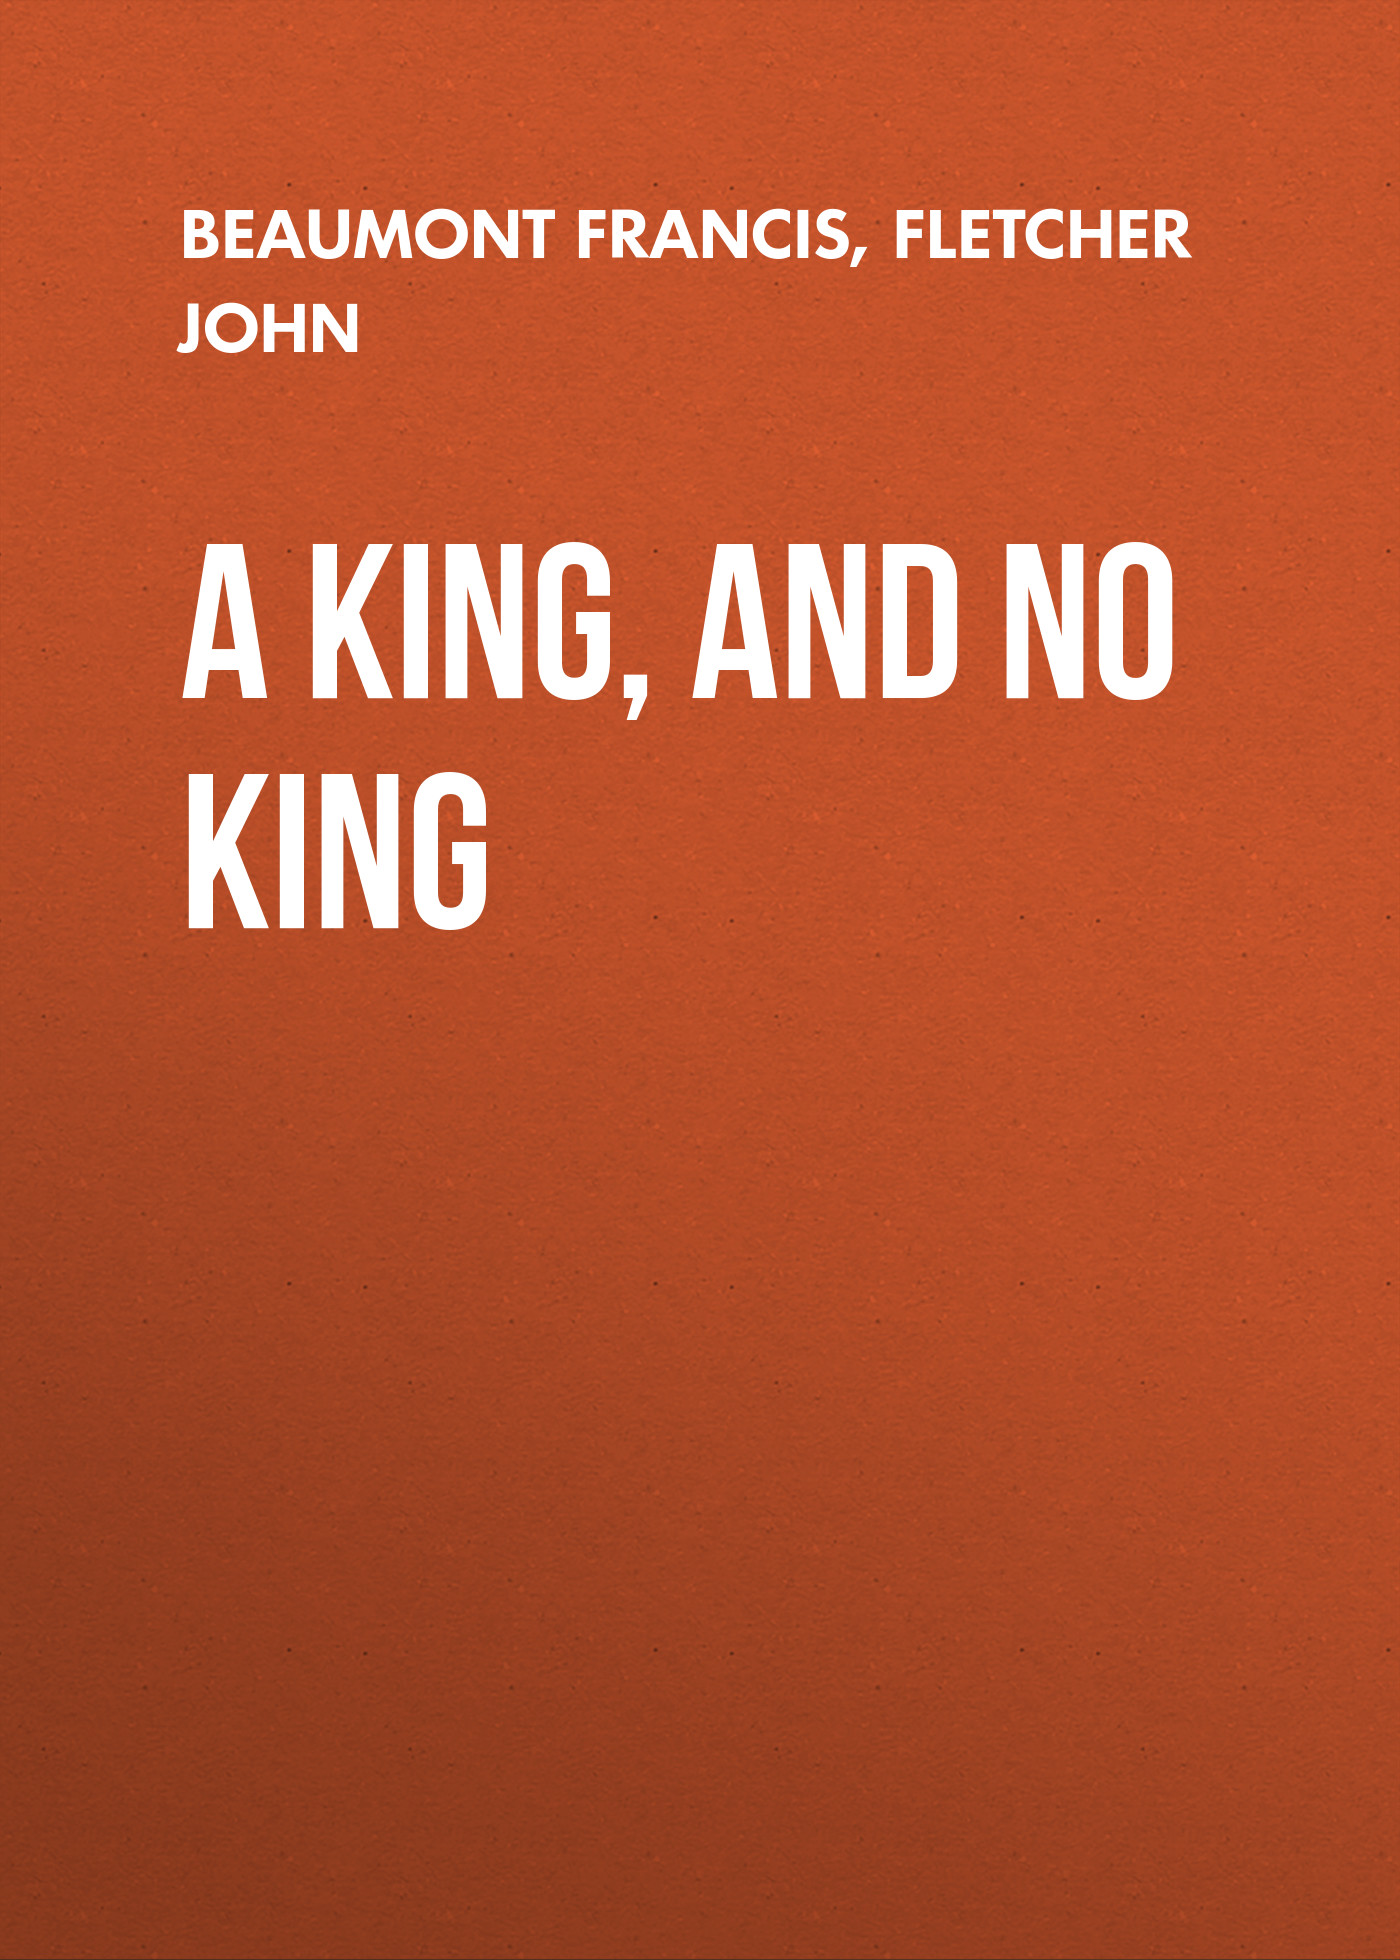 Книга A King, and No King из серии , созданная John Fletcher, Francis Beaumont, может относится к жанру Зарубежная драматургия, Драматургия, Зарубежная старинная литература, Зарубежная классика. Стоимость электронной книги A King, and No King с идентификатором 36367118 составляет 0 руб.